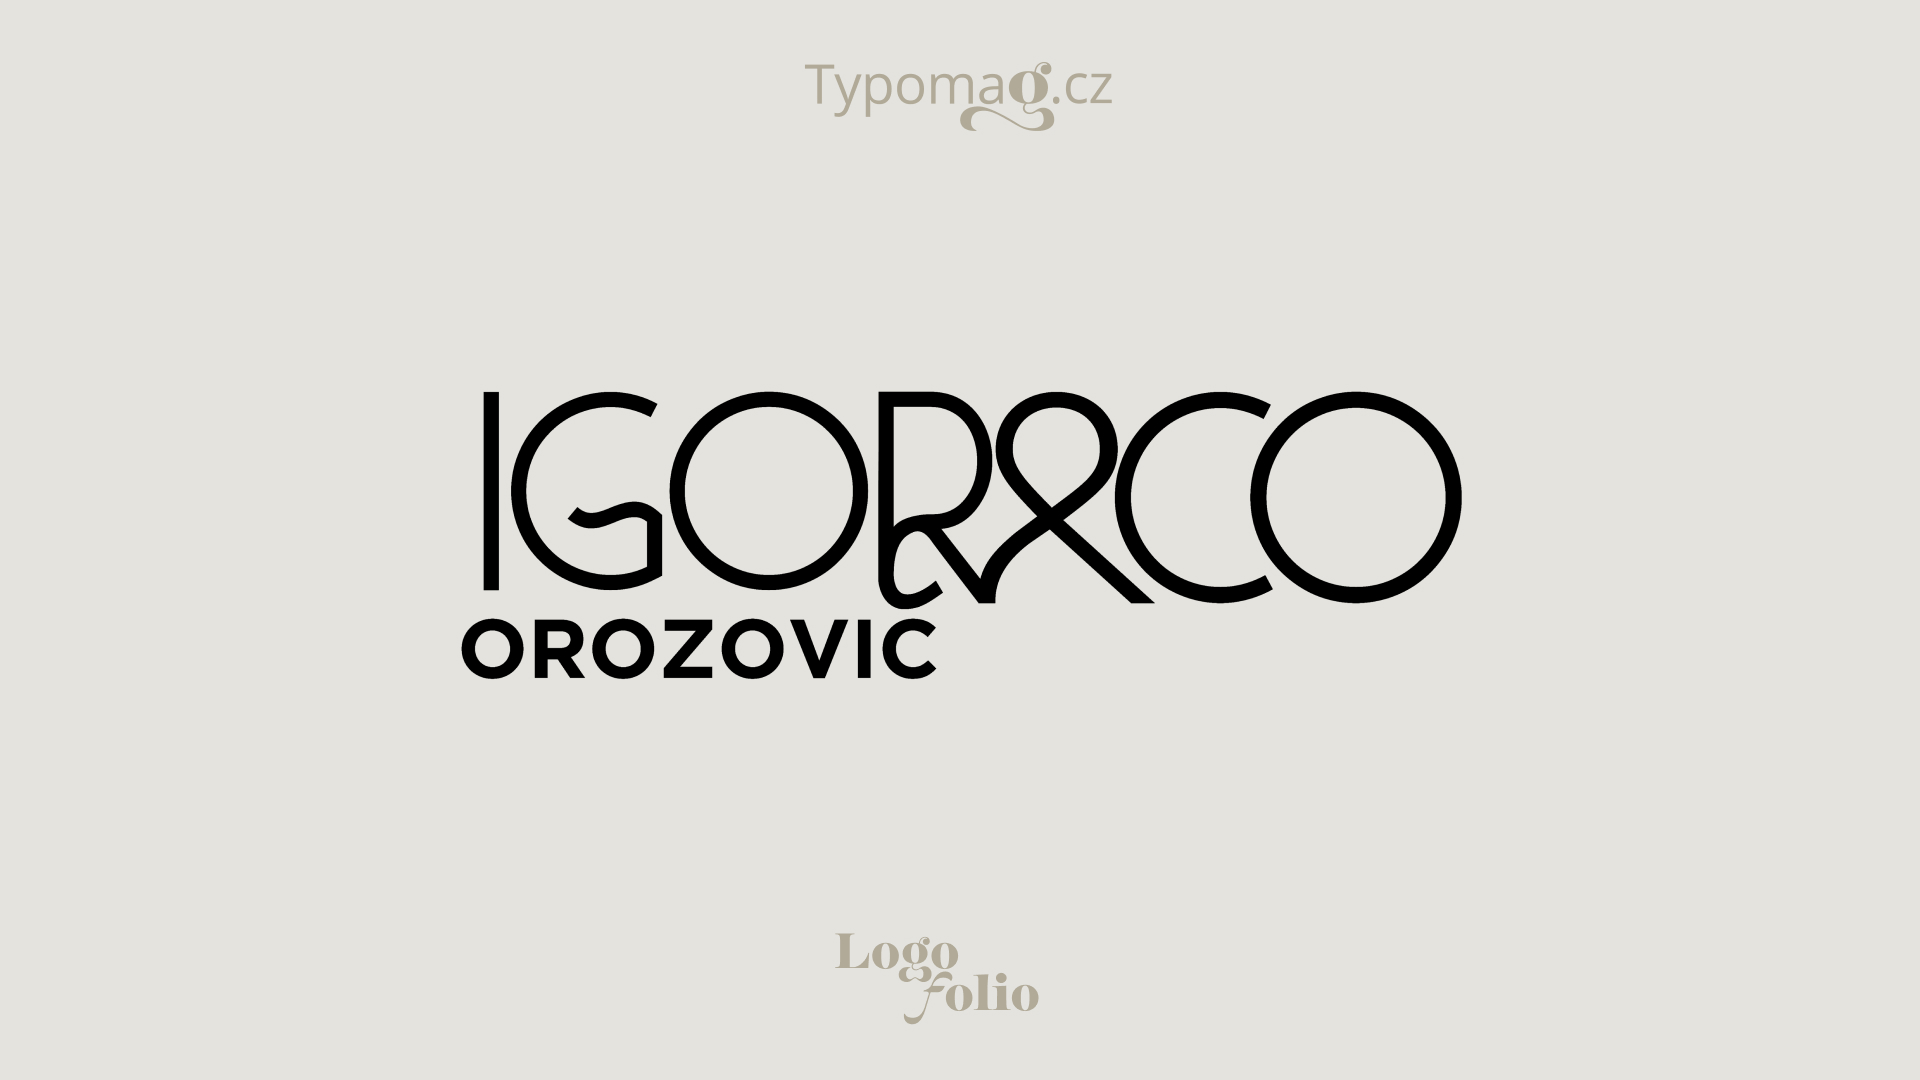 Logotyp Typomag